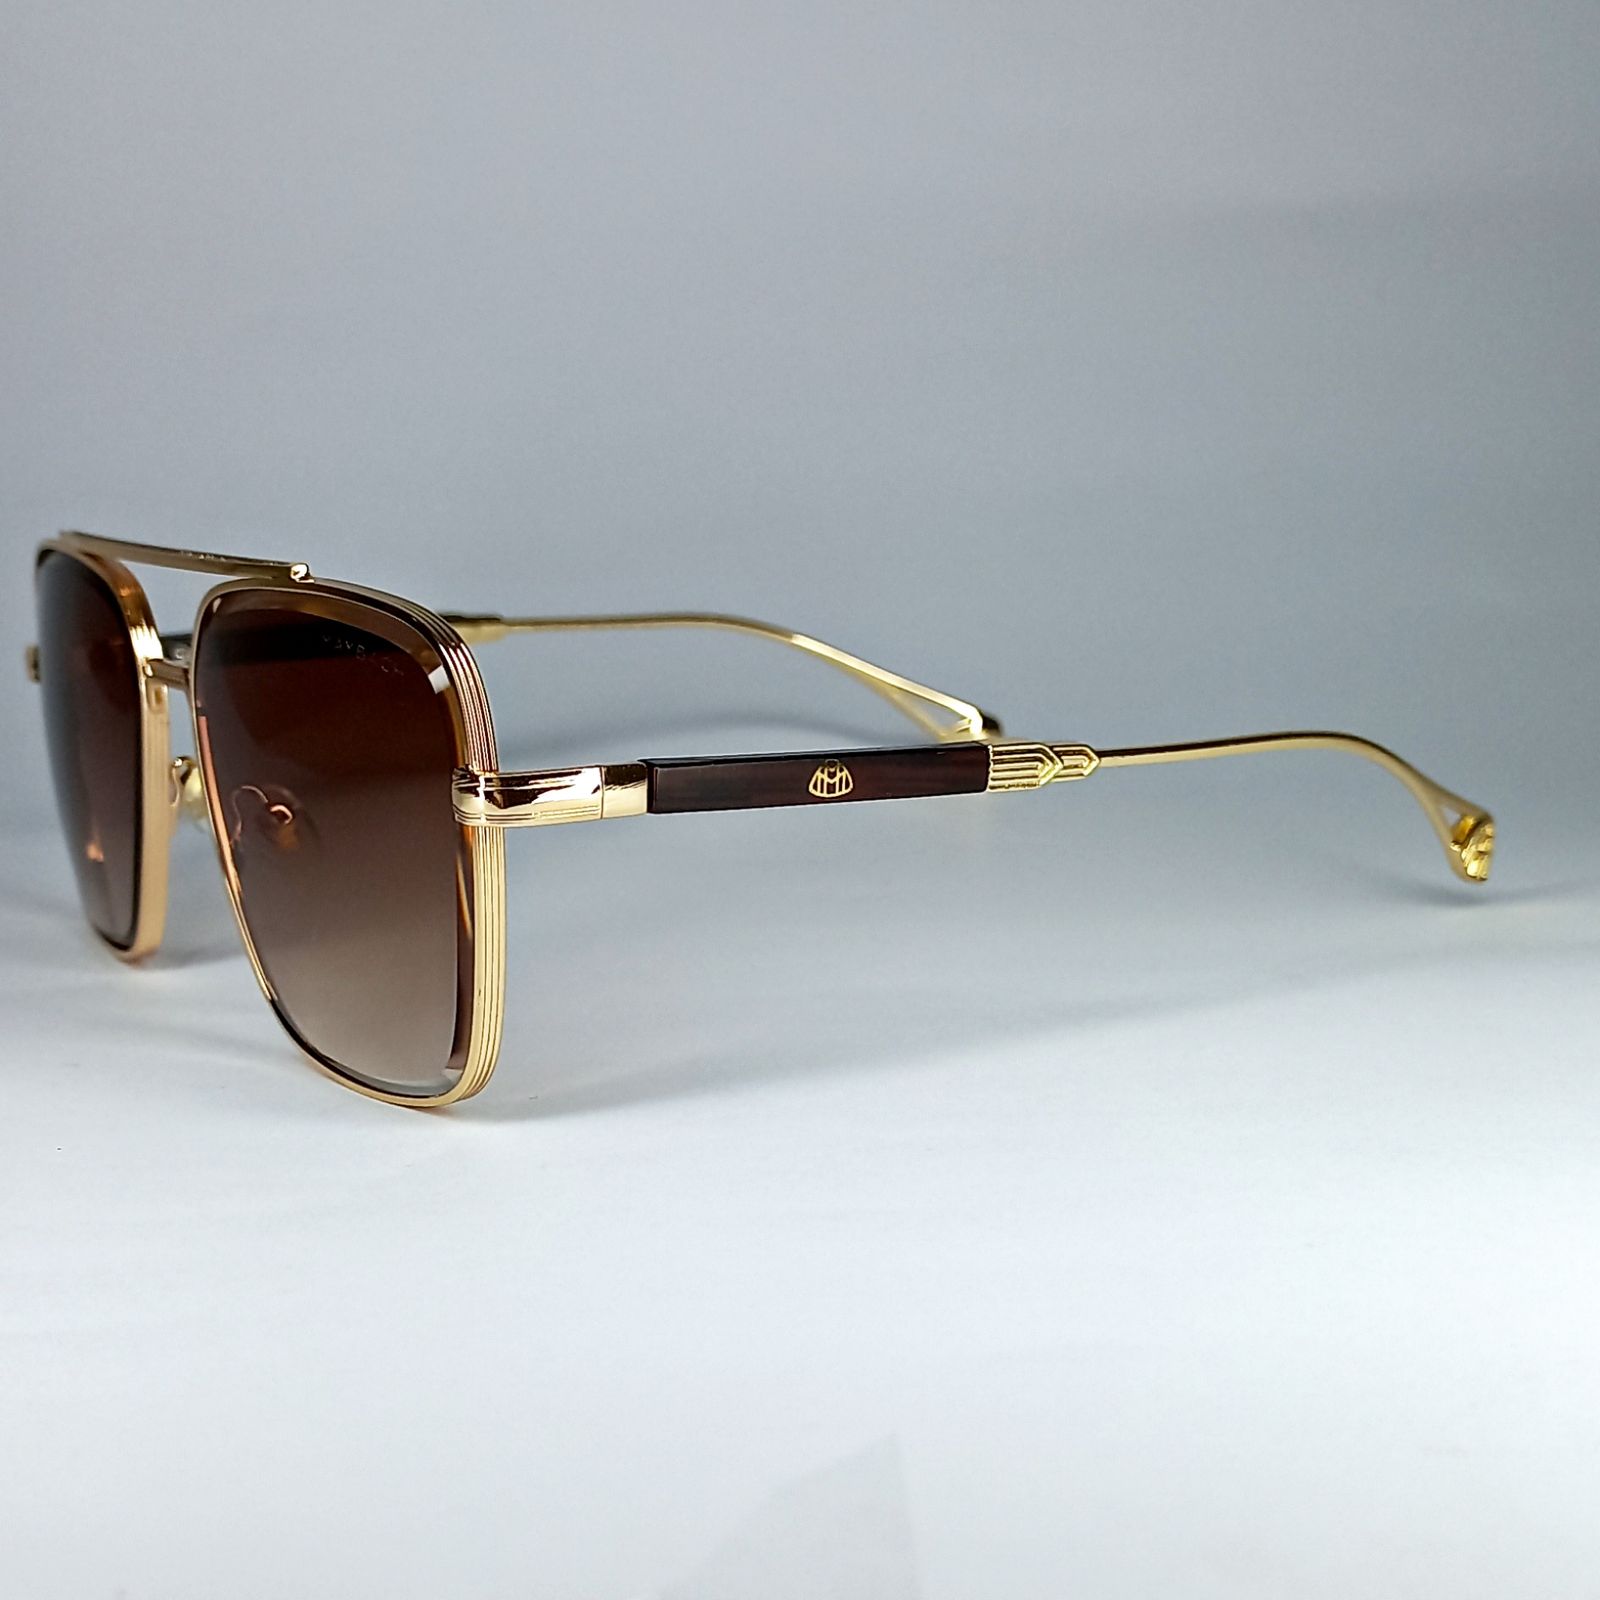 عینک آفتابی مردانه میباخ مدل Gf88 -  - 2